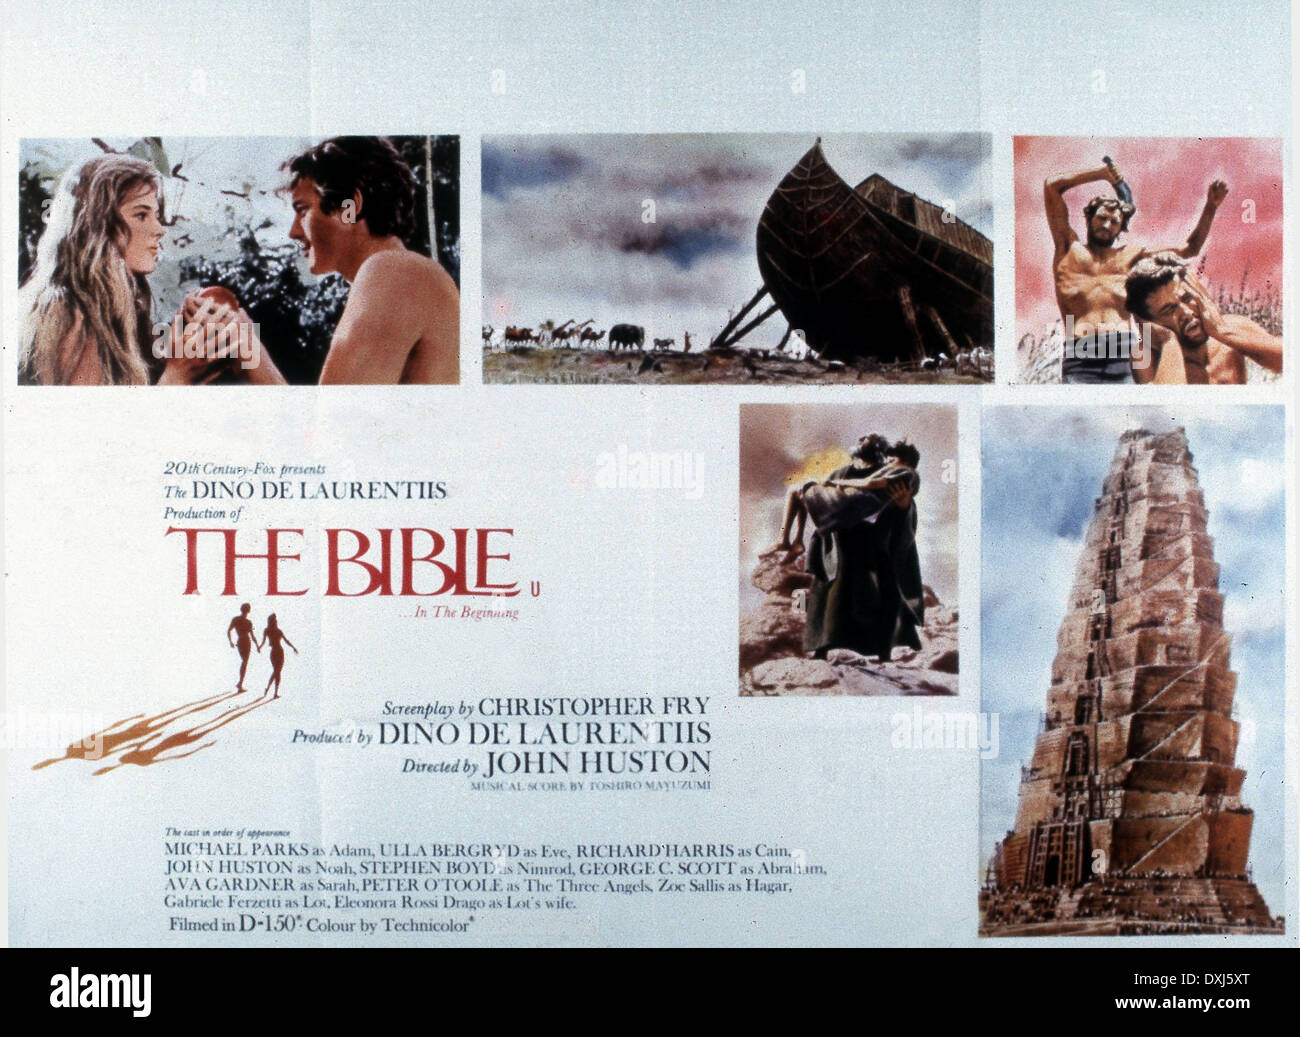 THE BIBLE (US/IT 1966) C20TH FOX/DINO DE LAURENTIIS CINEMATO Stock Photo